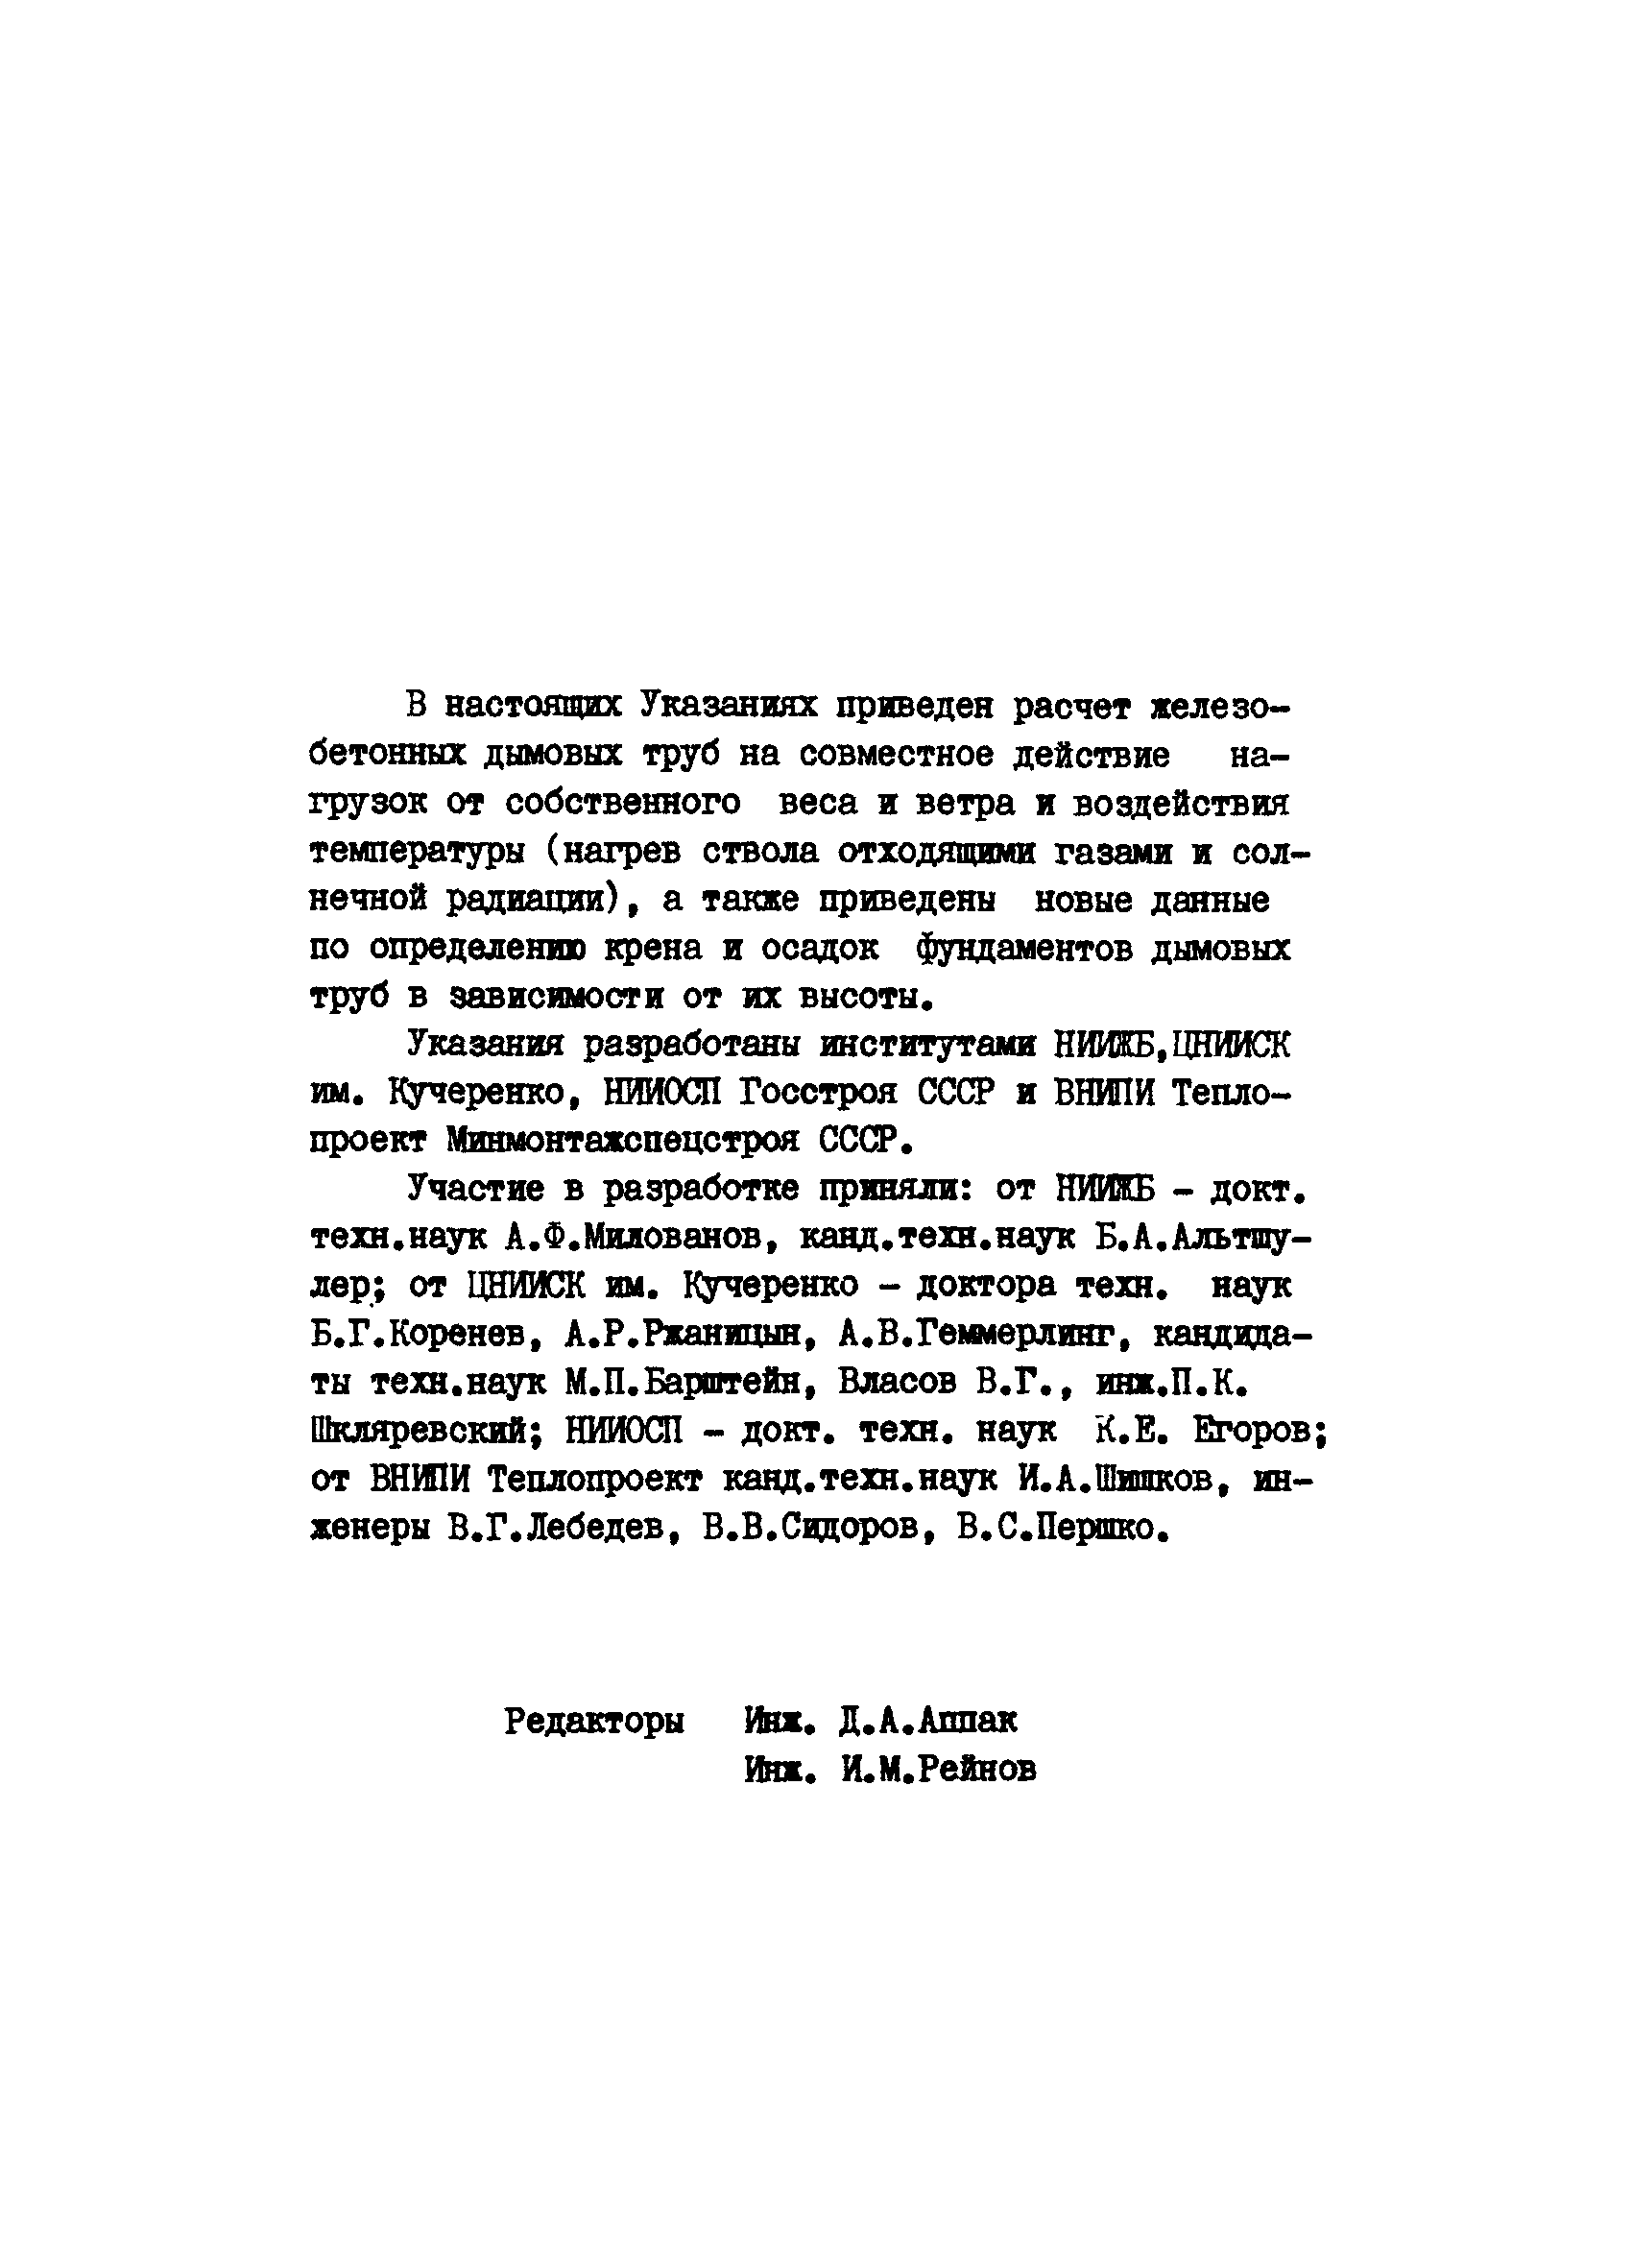 ВСН 286-72